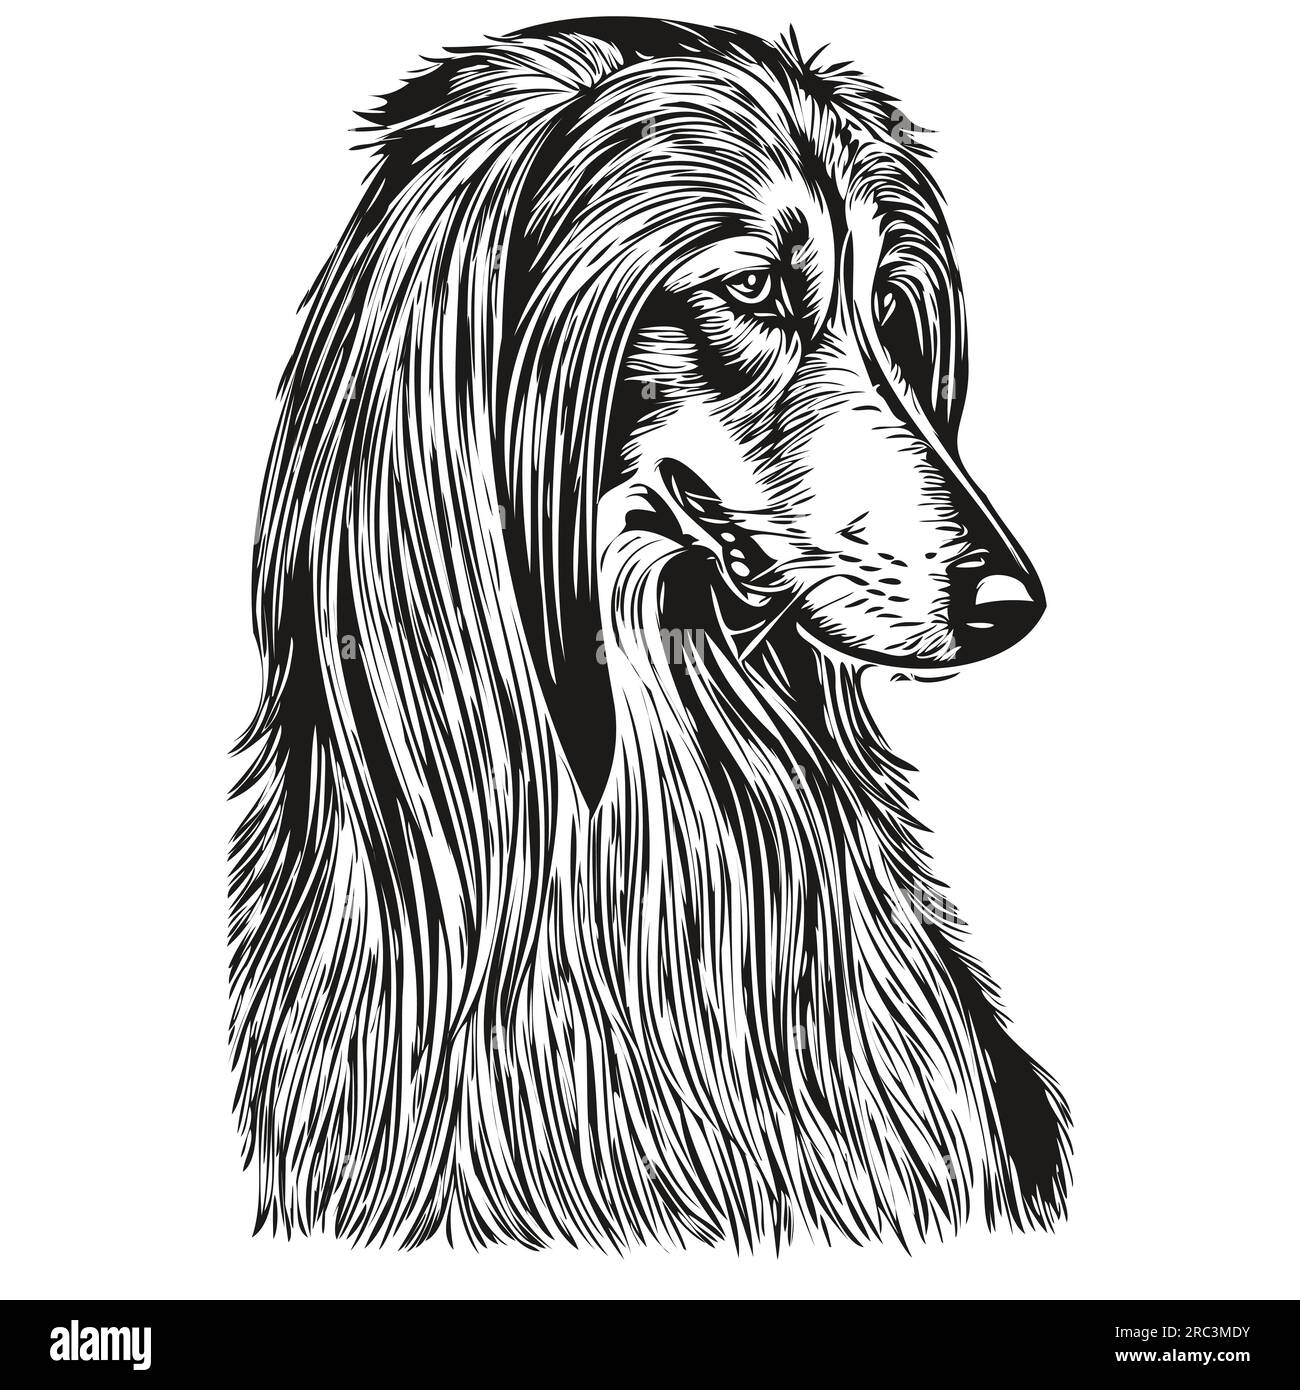 Dessin au trait de race de chien de chien de chien afghan, clip art animal dessin à la main vecteur noir et blanc animal de compagnie réaliste de race Illustration de Vecteur